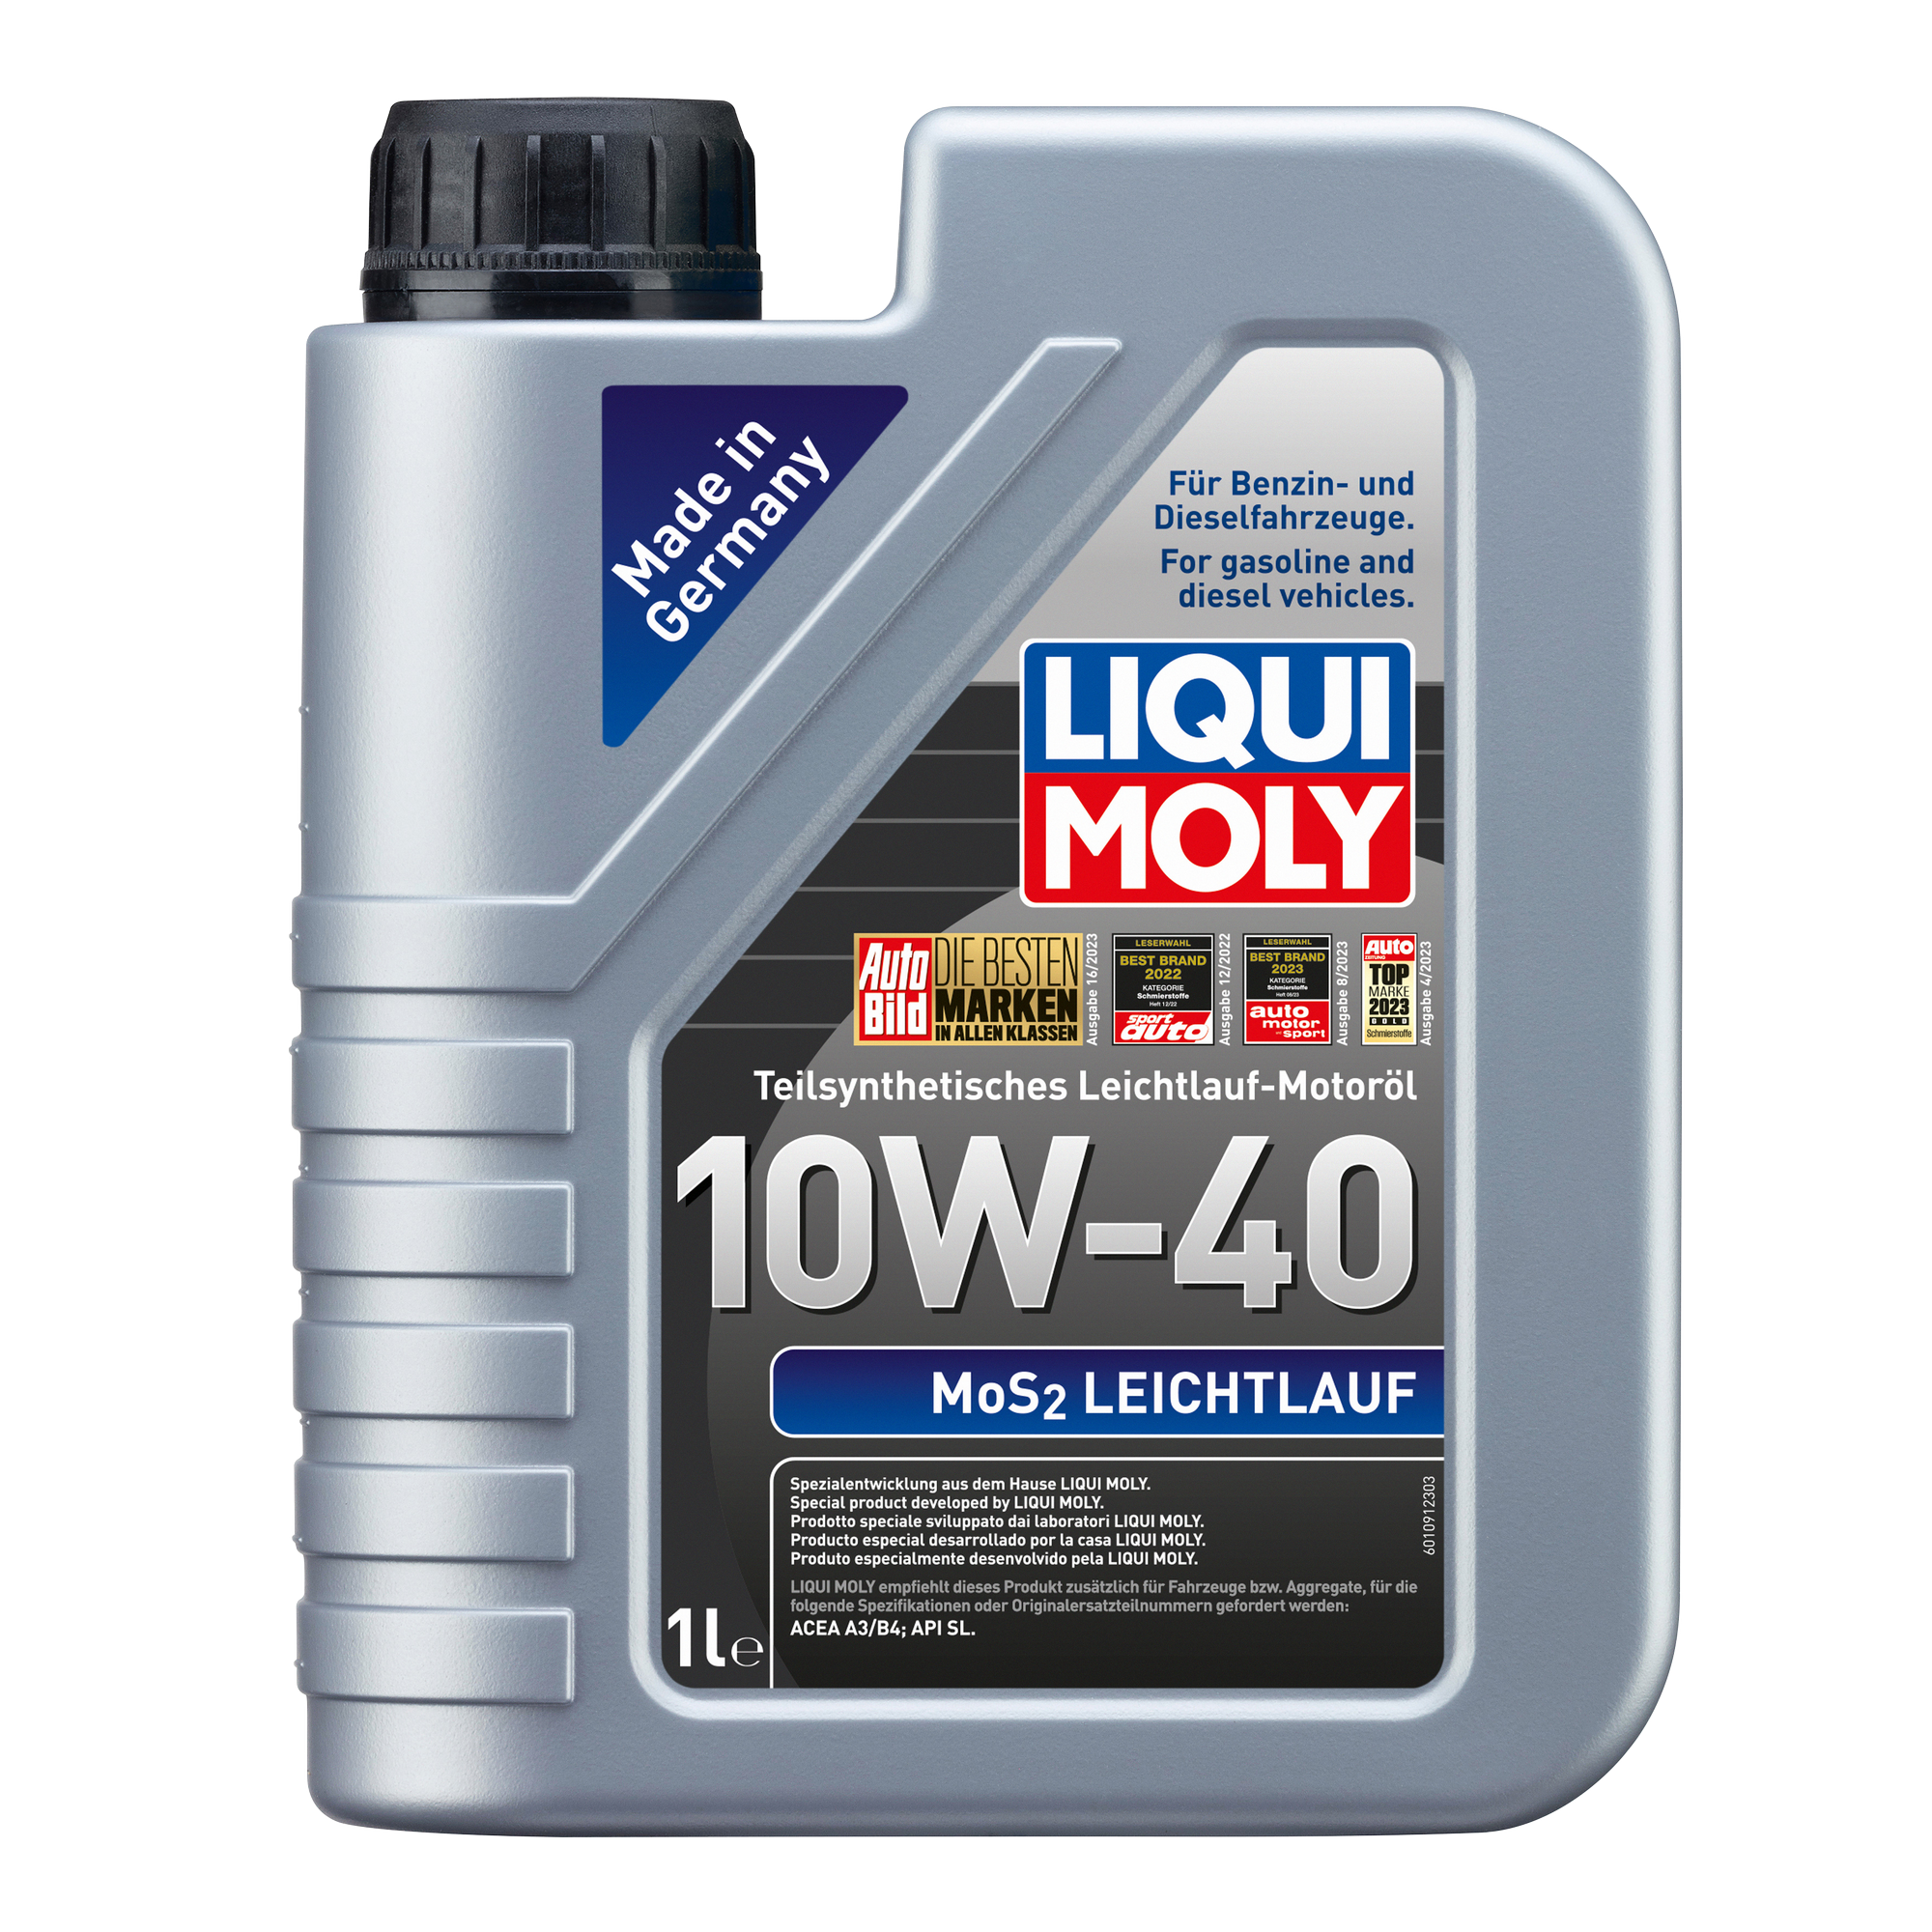 Leichtlauf-Motoröl MoS₂ '10W-40' 1 l + product picture